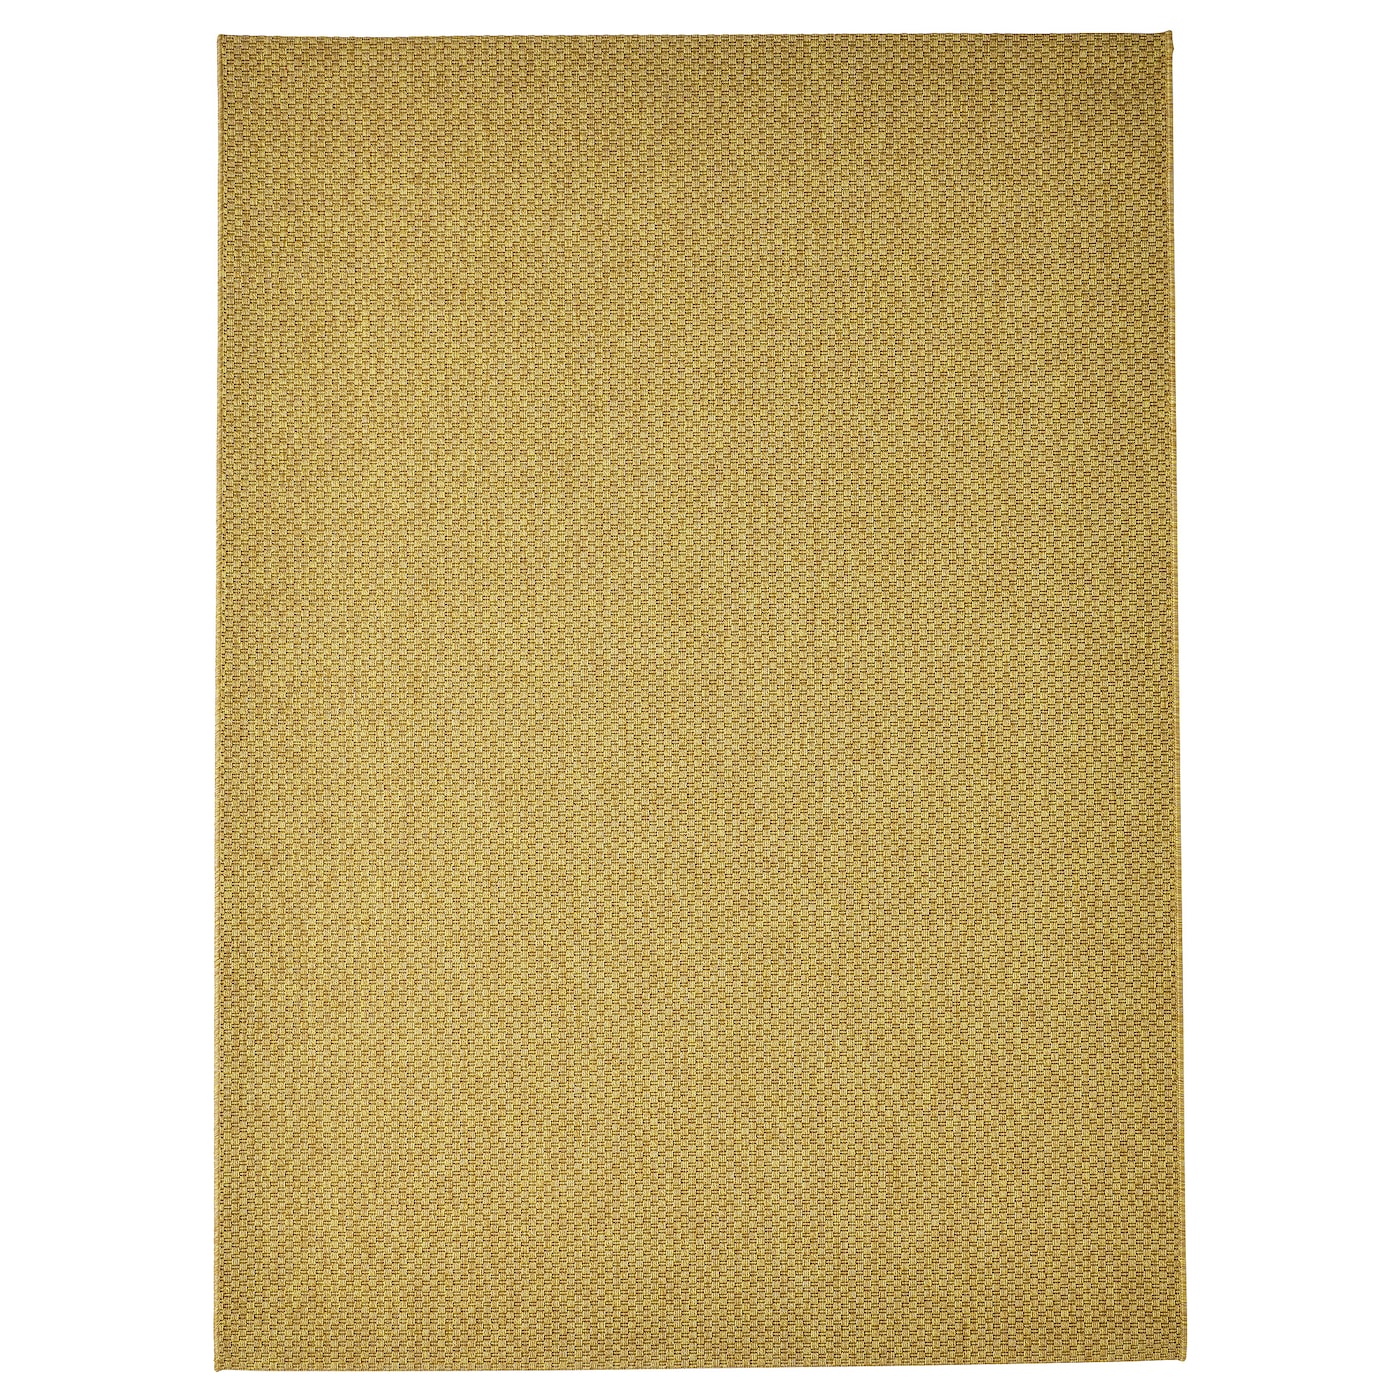 Текстильный ковер для дома и улицы - IKEA MORUM/МОРУМ ИКЕА, 230х160 см, желтый